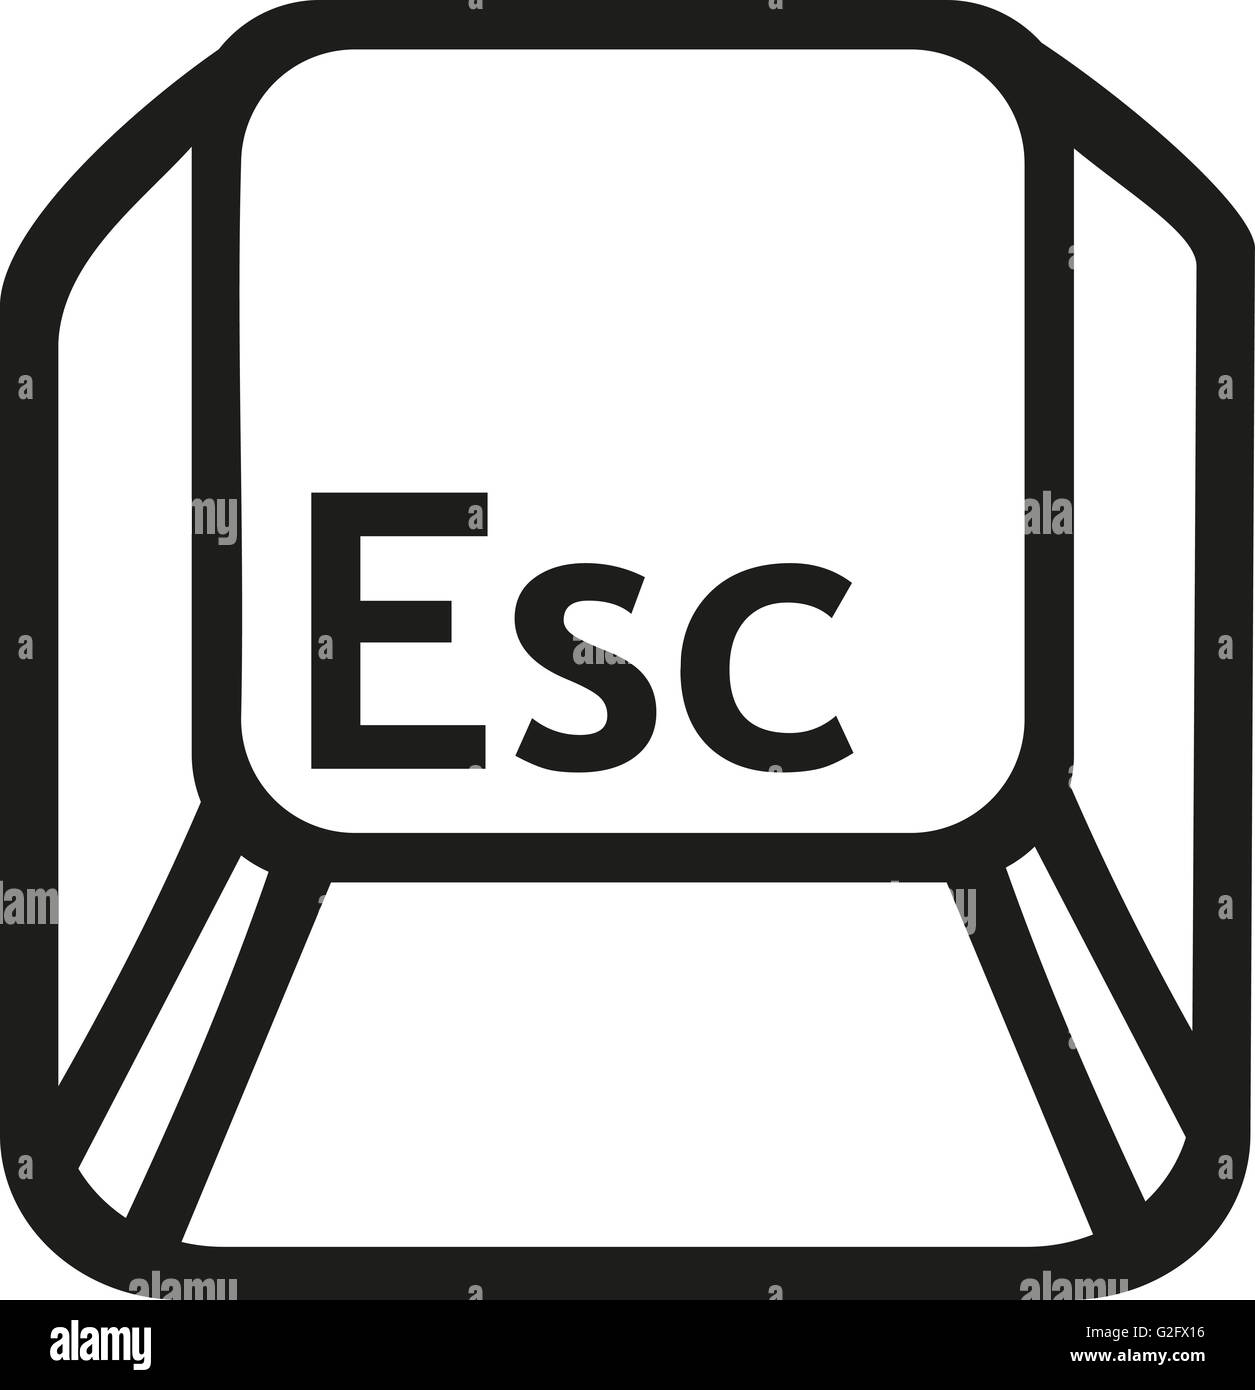 Escape button key Stock Photo